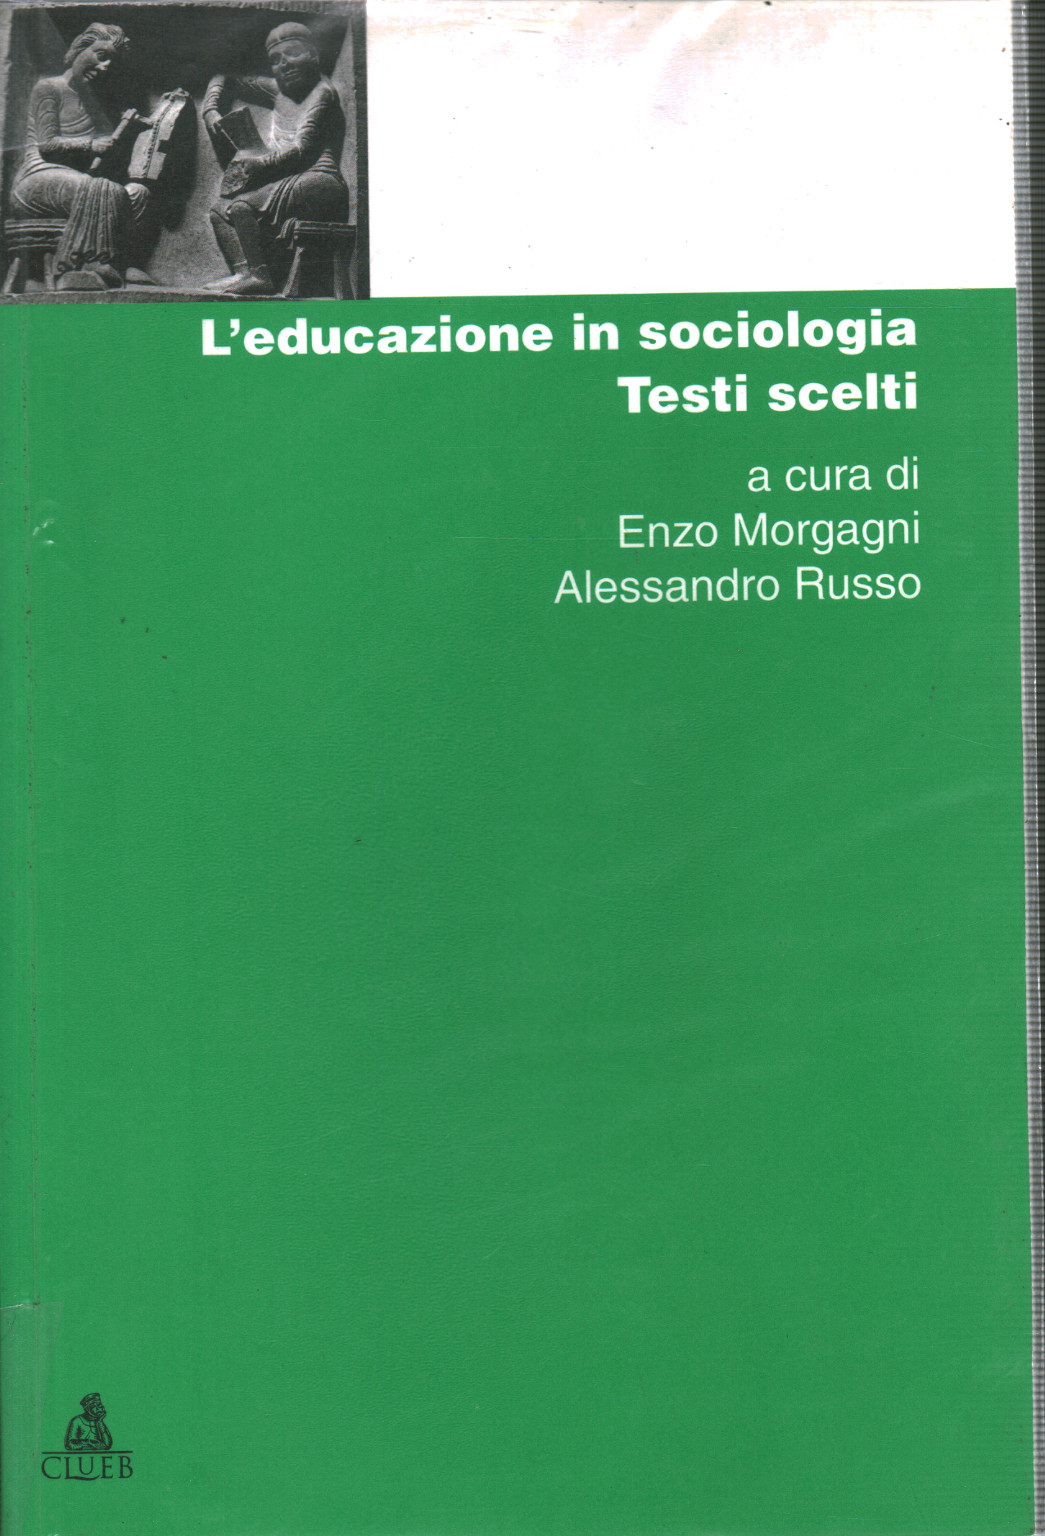 L educazione in sociologia, s.a.